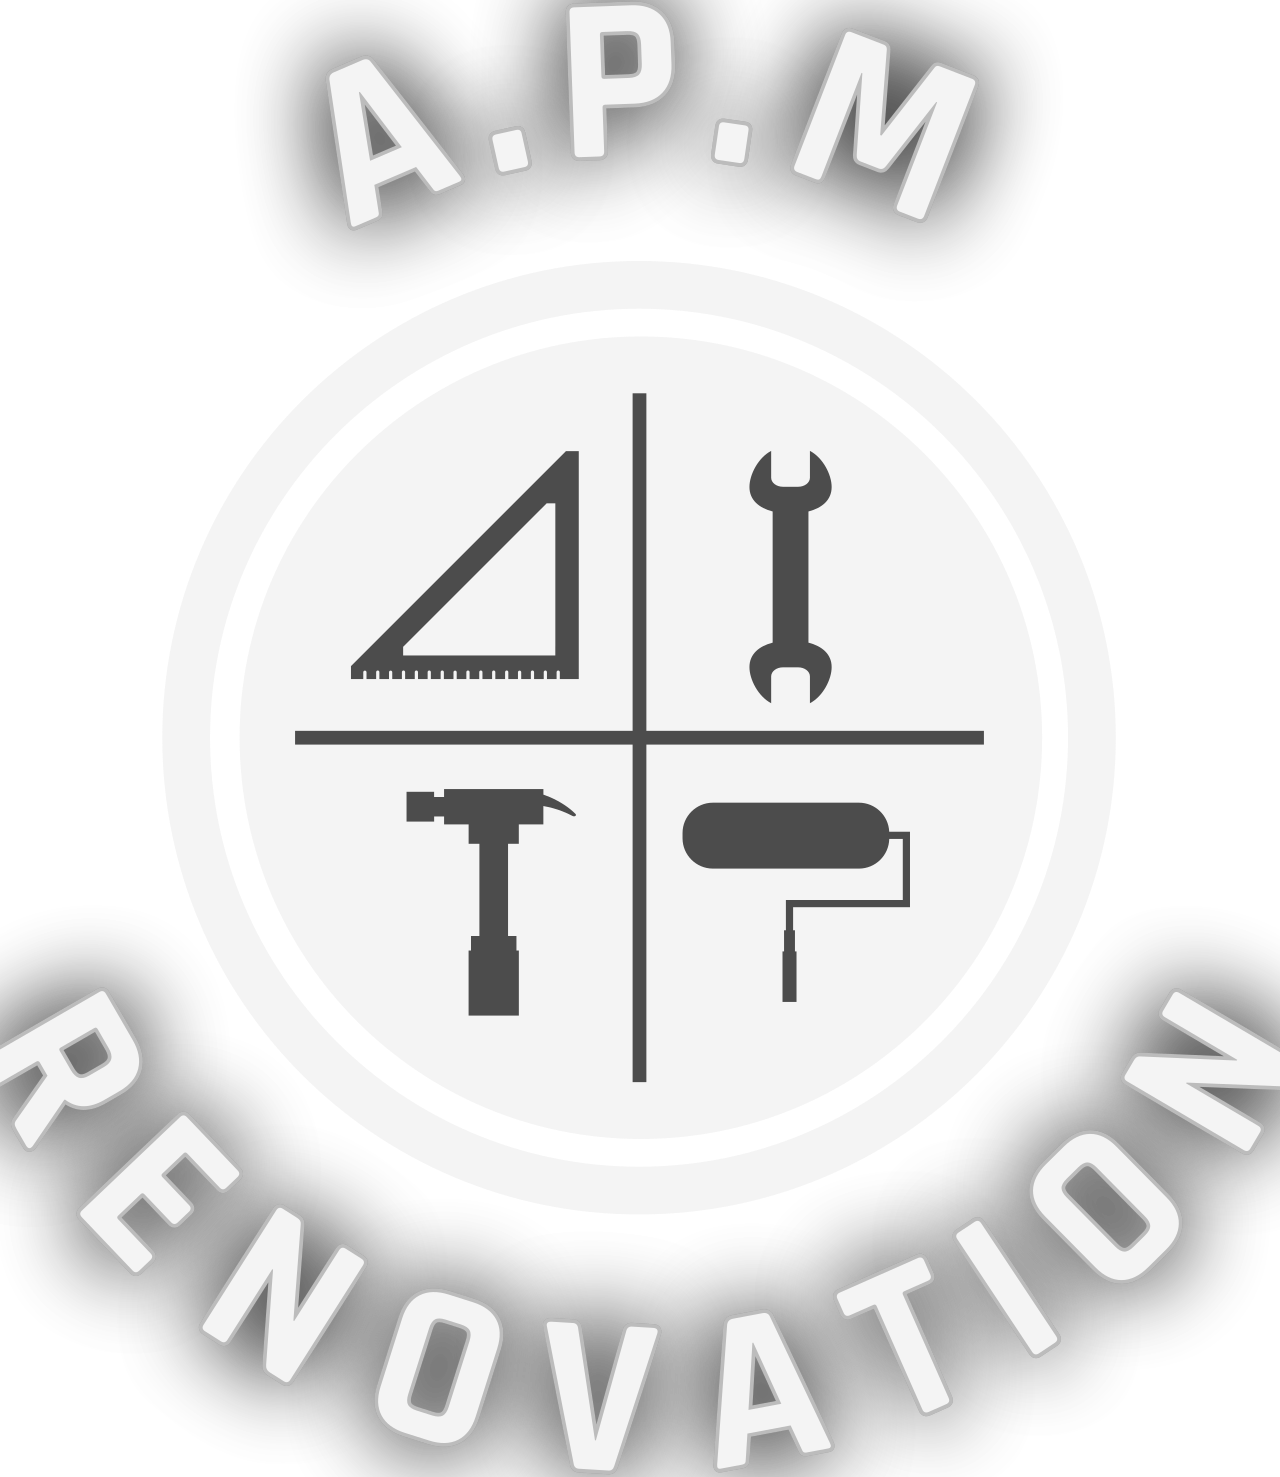 A.P.M's logo